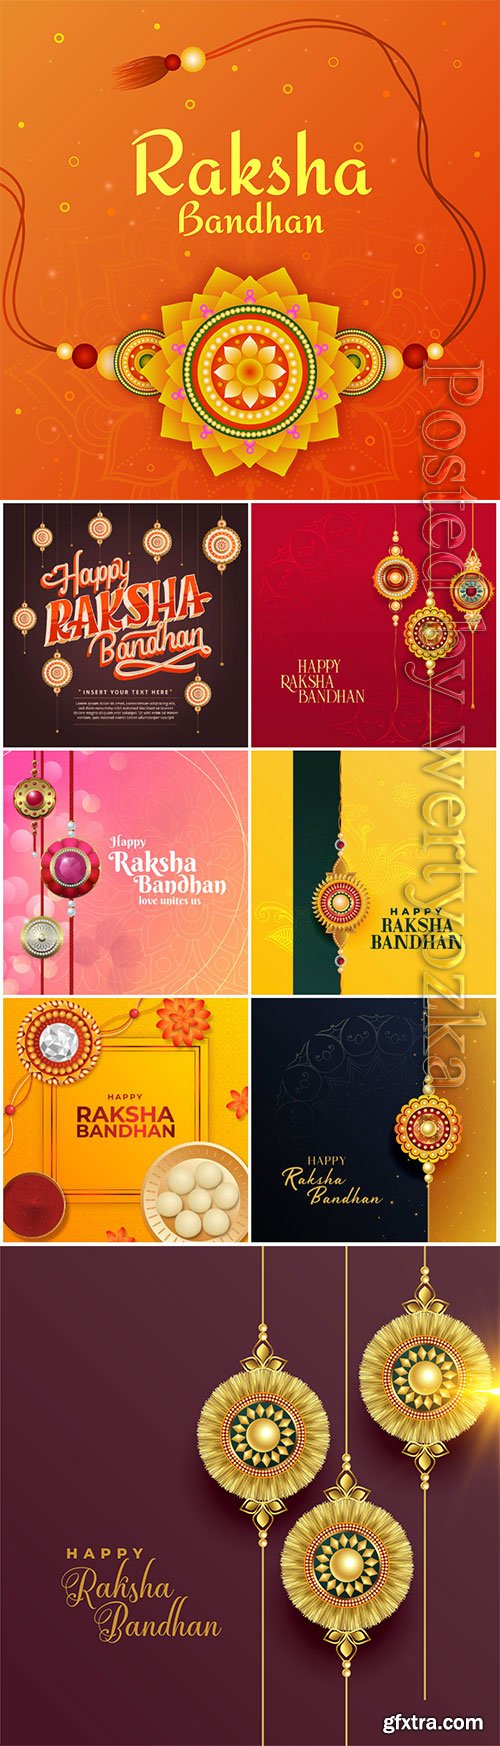 Happy raksha bandhan indian festival, beautiful greeting card